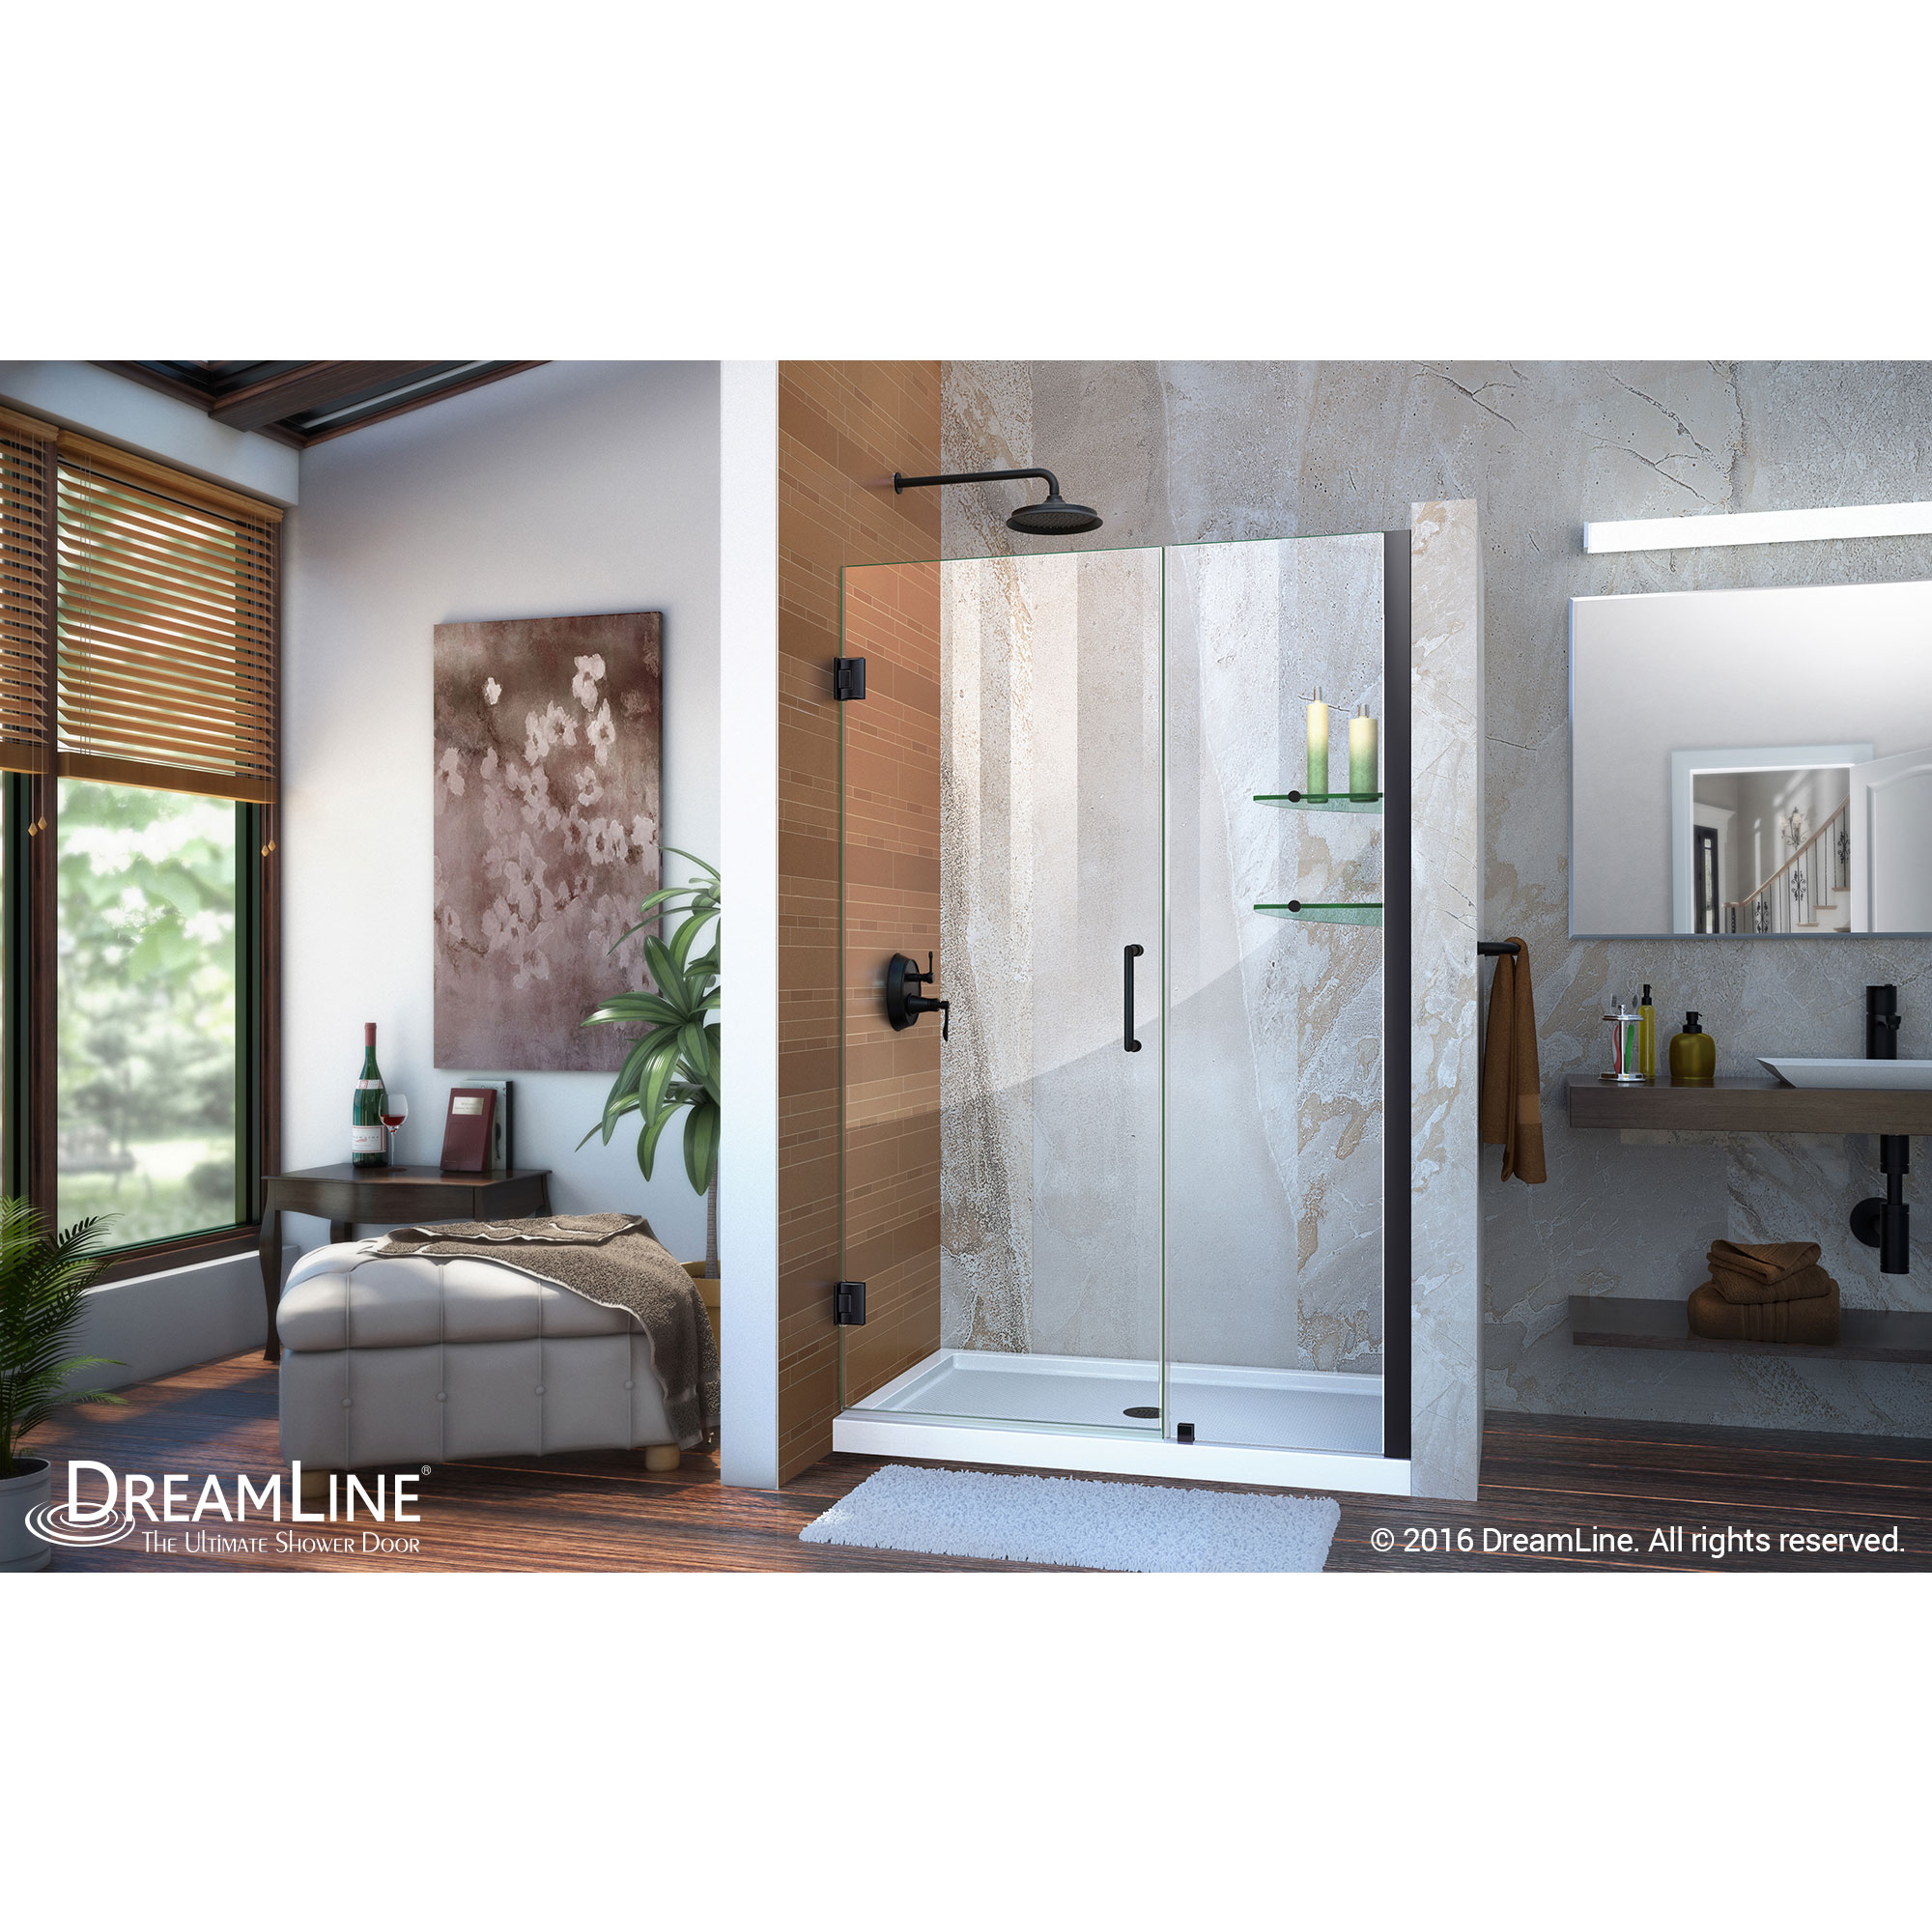 DreamLine Unidoor 43-44 in. W x 72 in. H Frameless Hinged Shower Door with Shelves in Satin Black